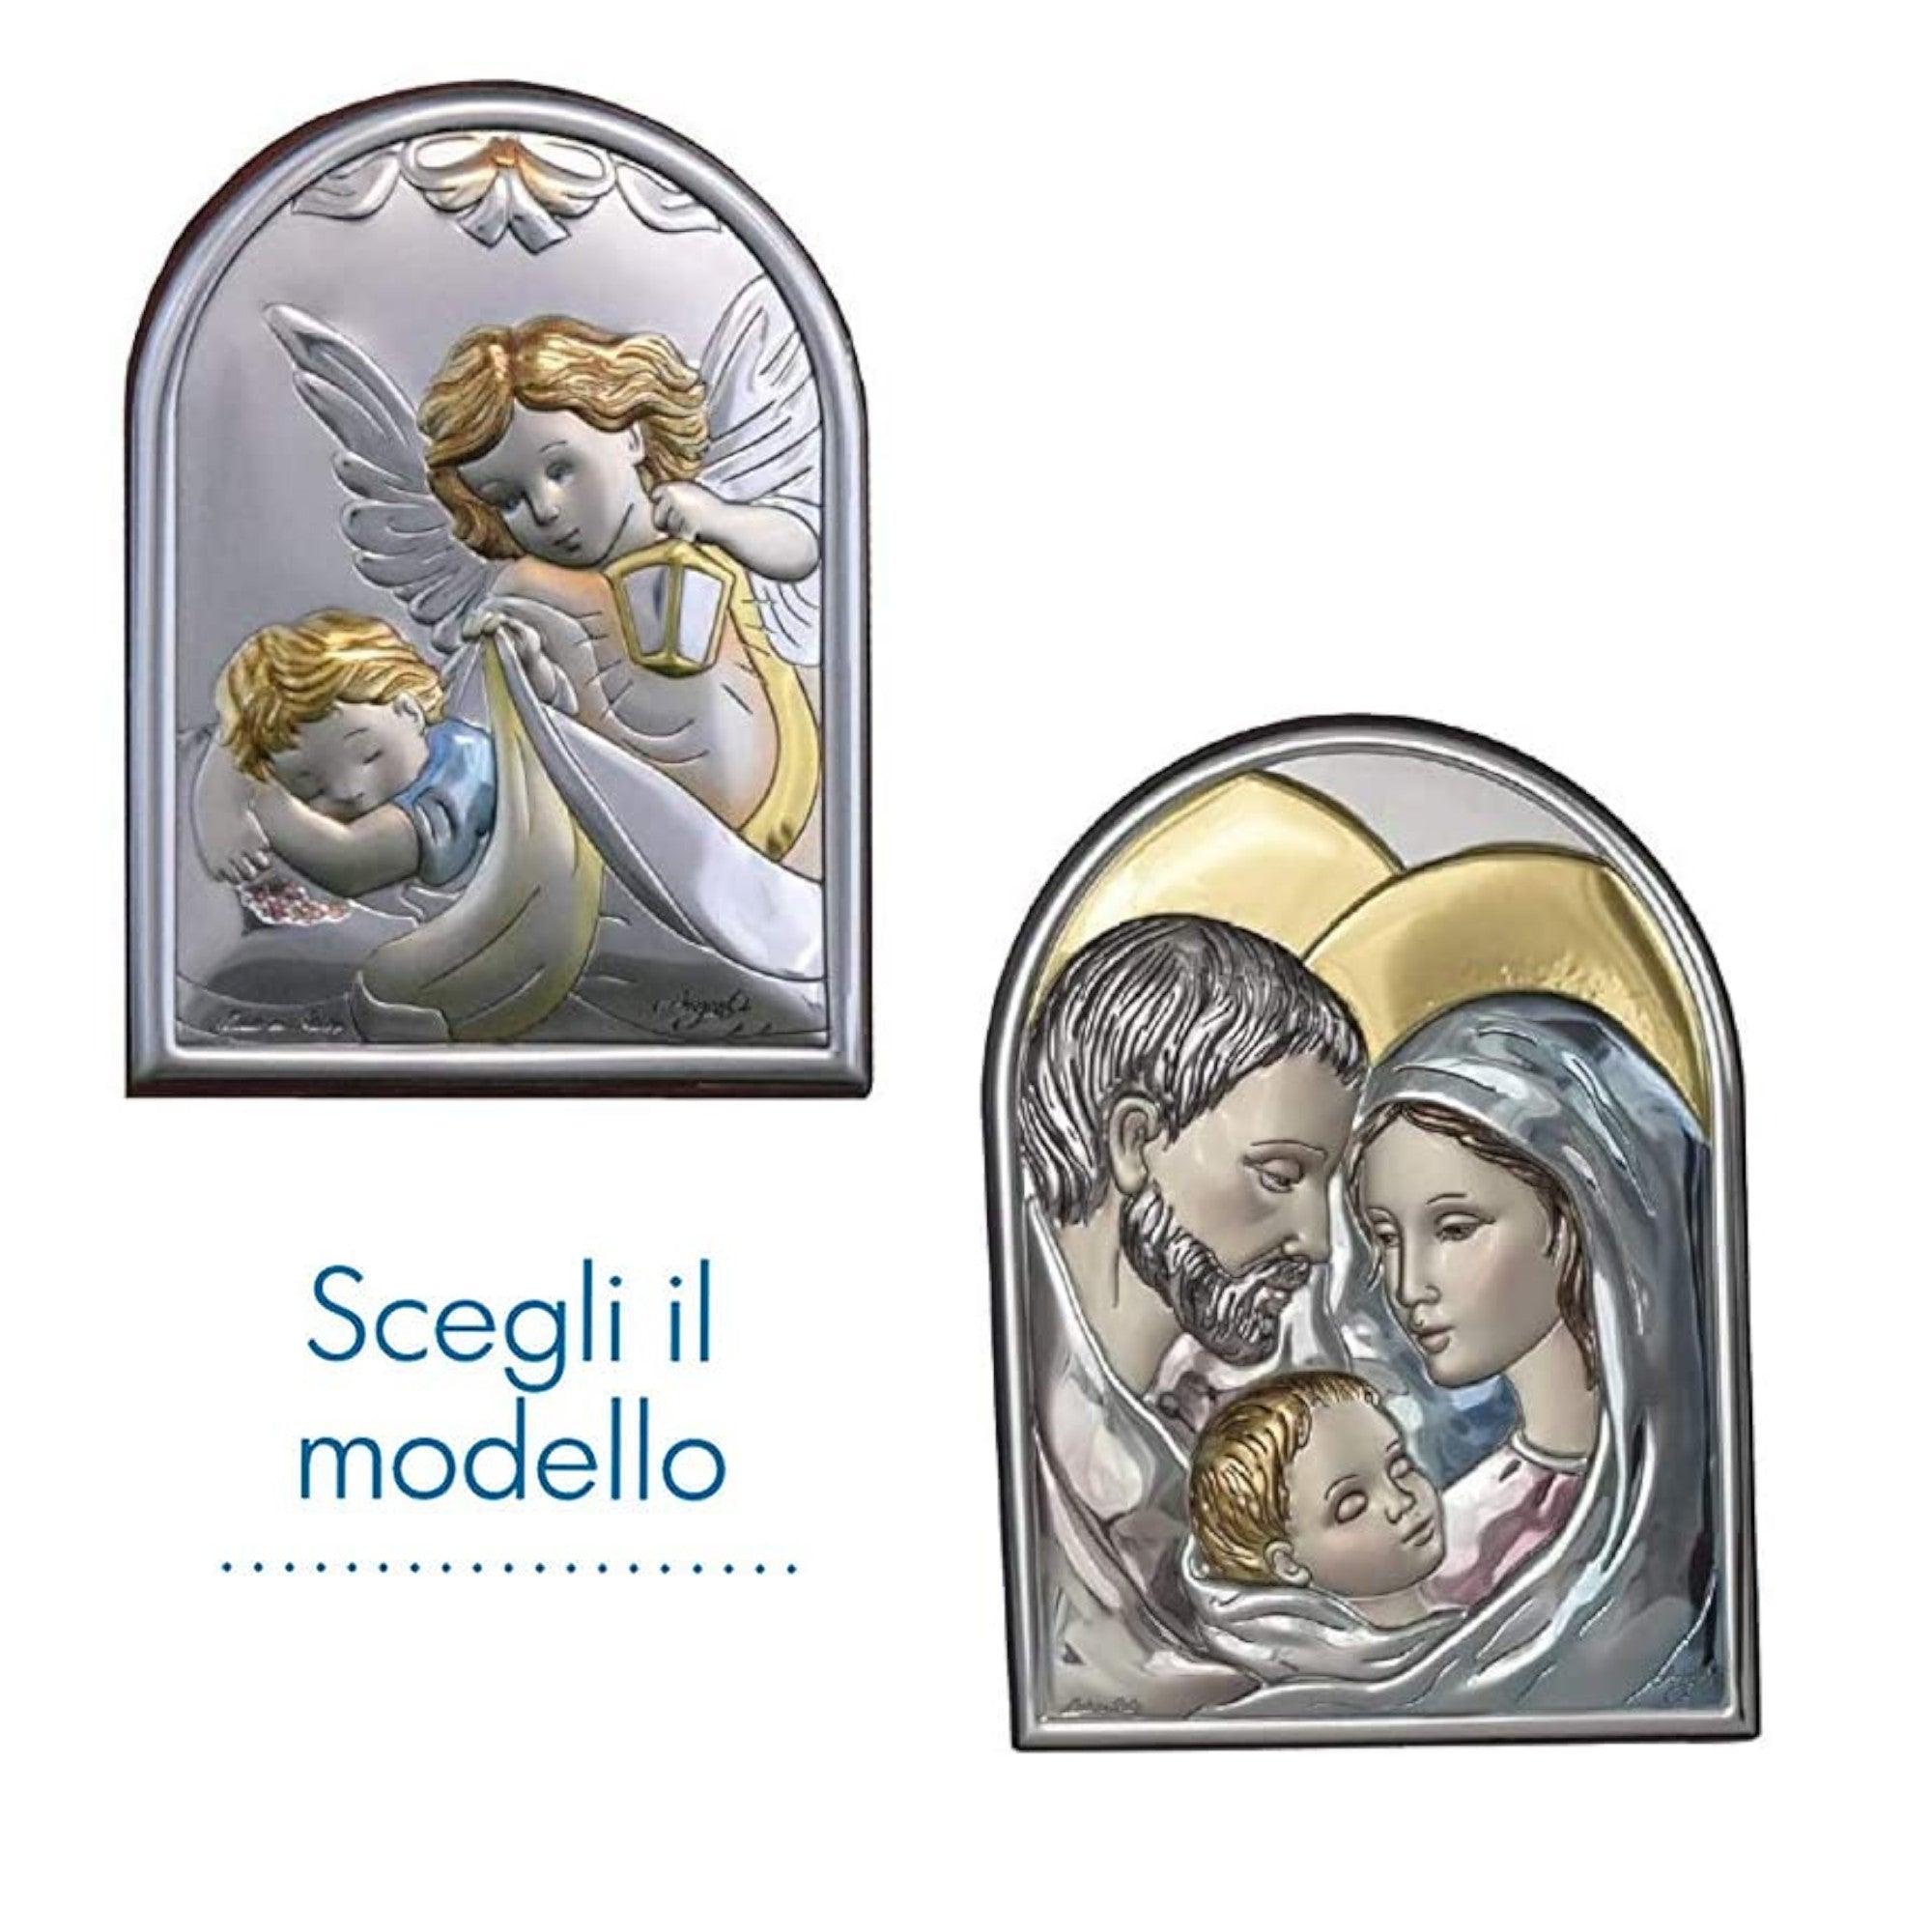 Icona Sacra Ad Arcata in Argento Laminato Colorato Con Retro In Legno Icone Sacre Albalu Bomboniere   